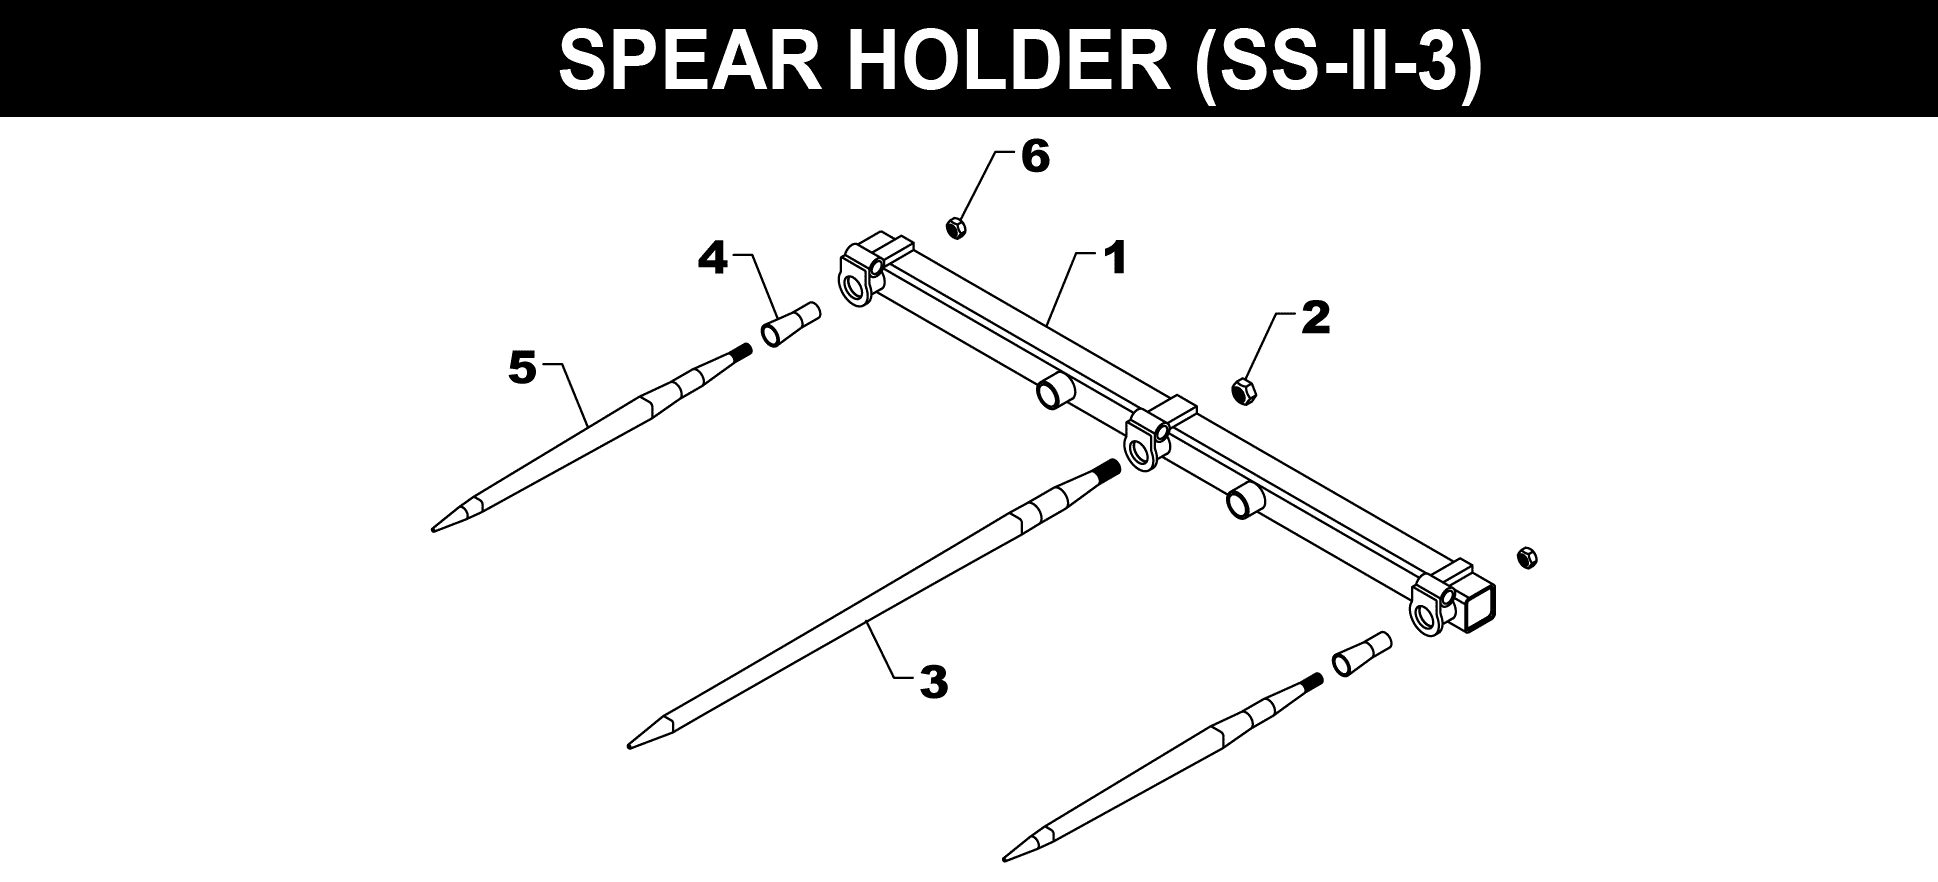 SS-II-3 Spear Holder